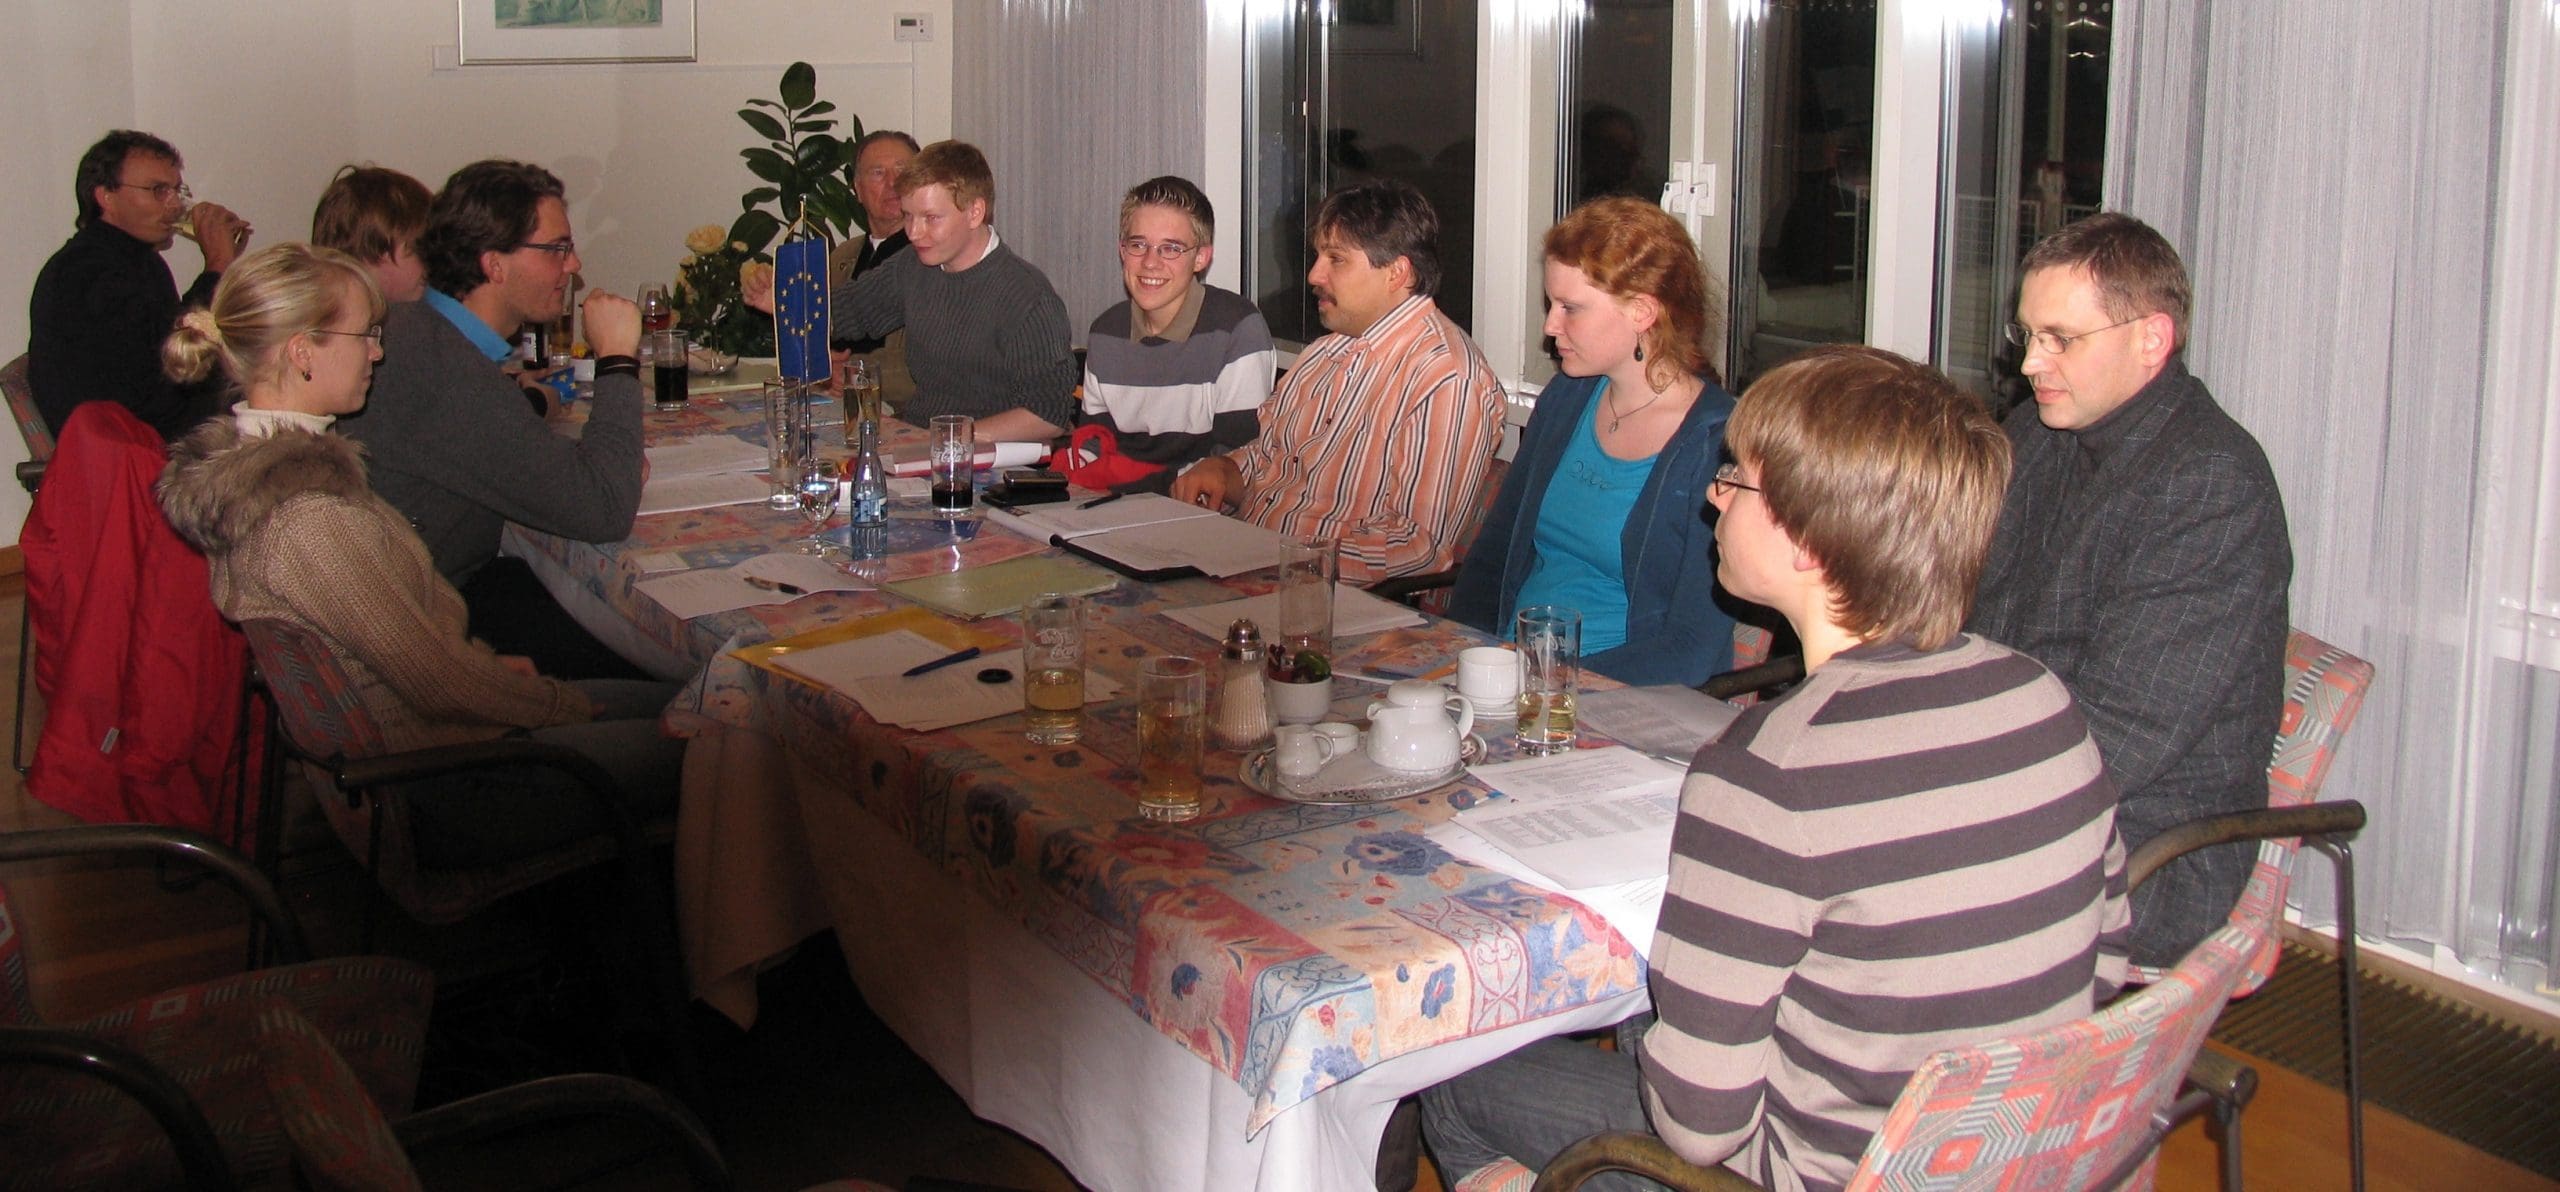 JEF találkozó 2007